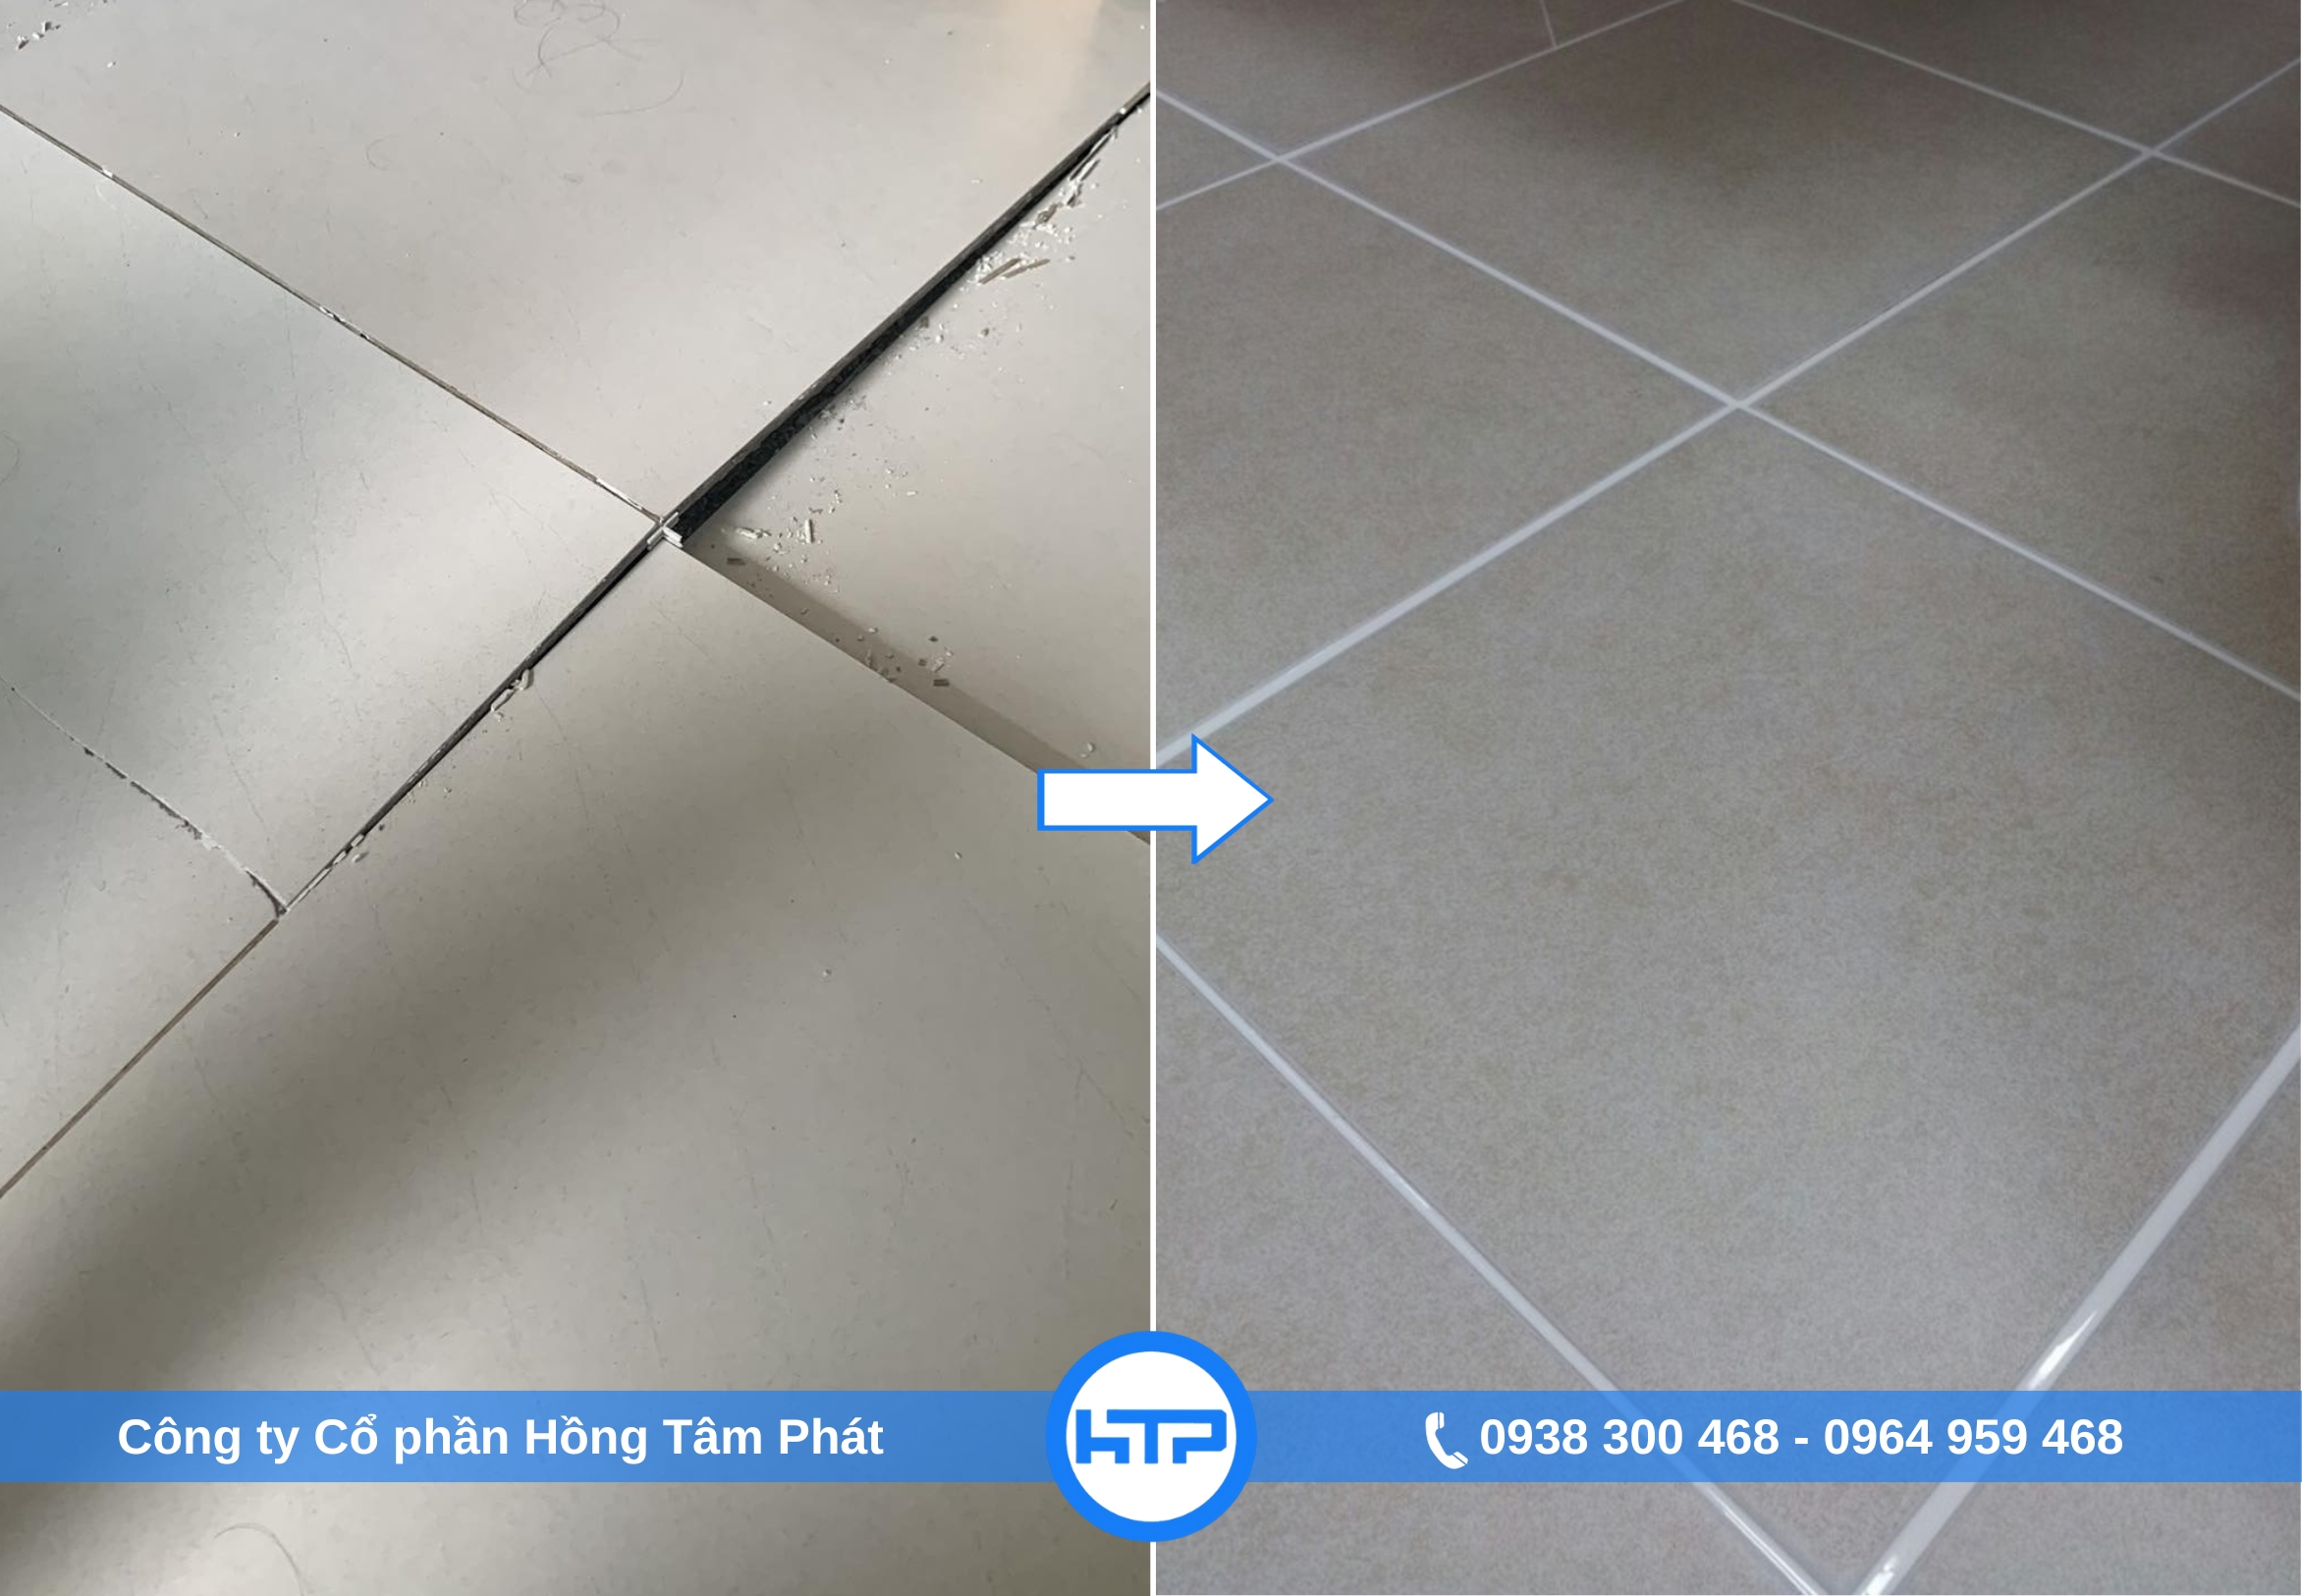 Cần xử lý gạch bị phồng rộp để khôi phục giá trị thẩm mỹ và độ an toàn cho sàn nhà